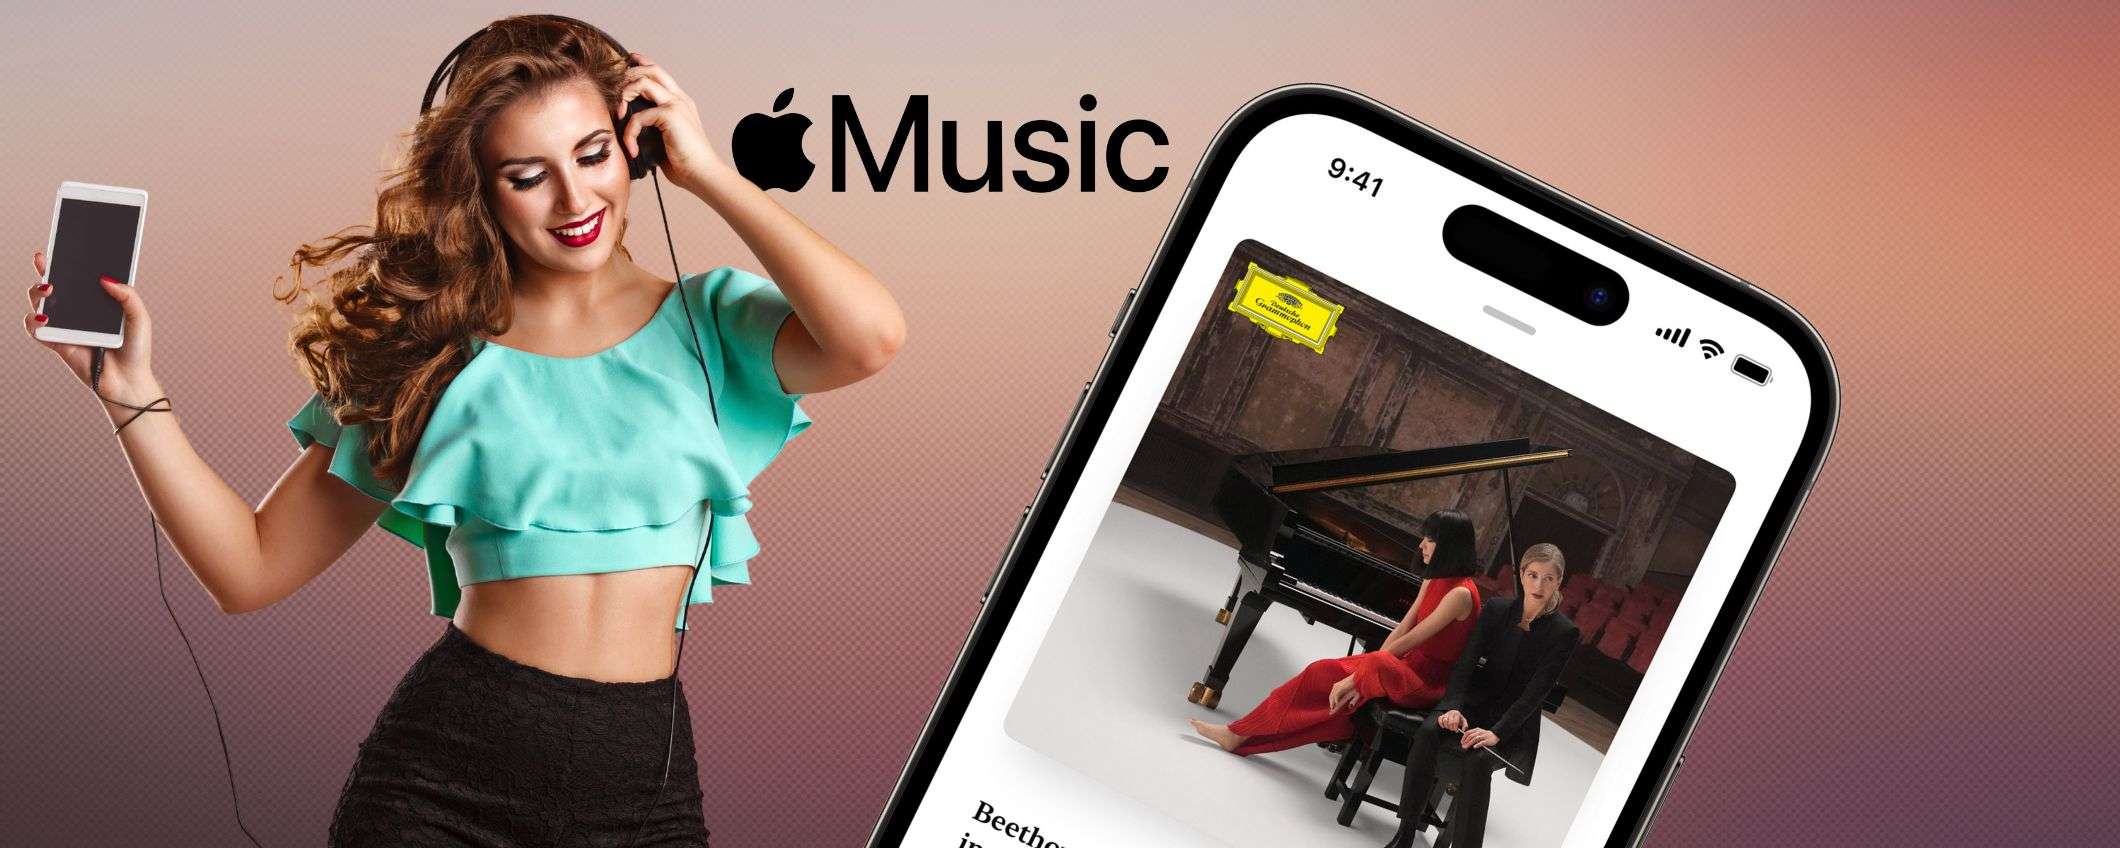 Apple Music: la tua musica preferita oggi GRATIS per un mese